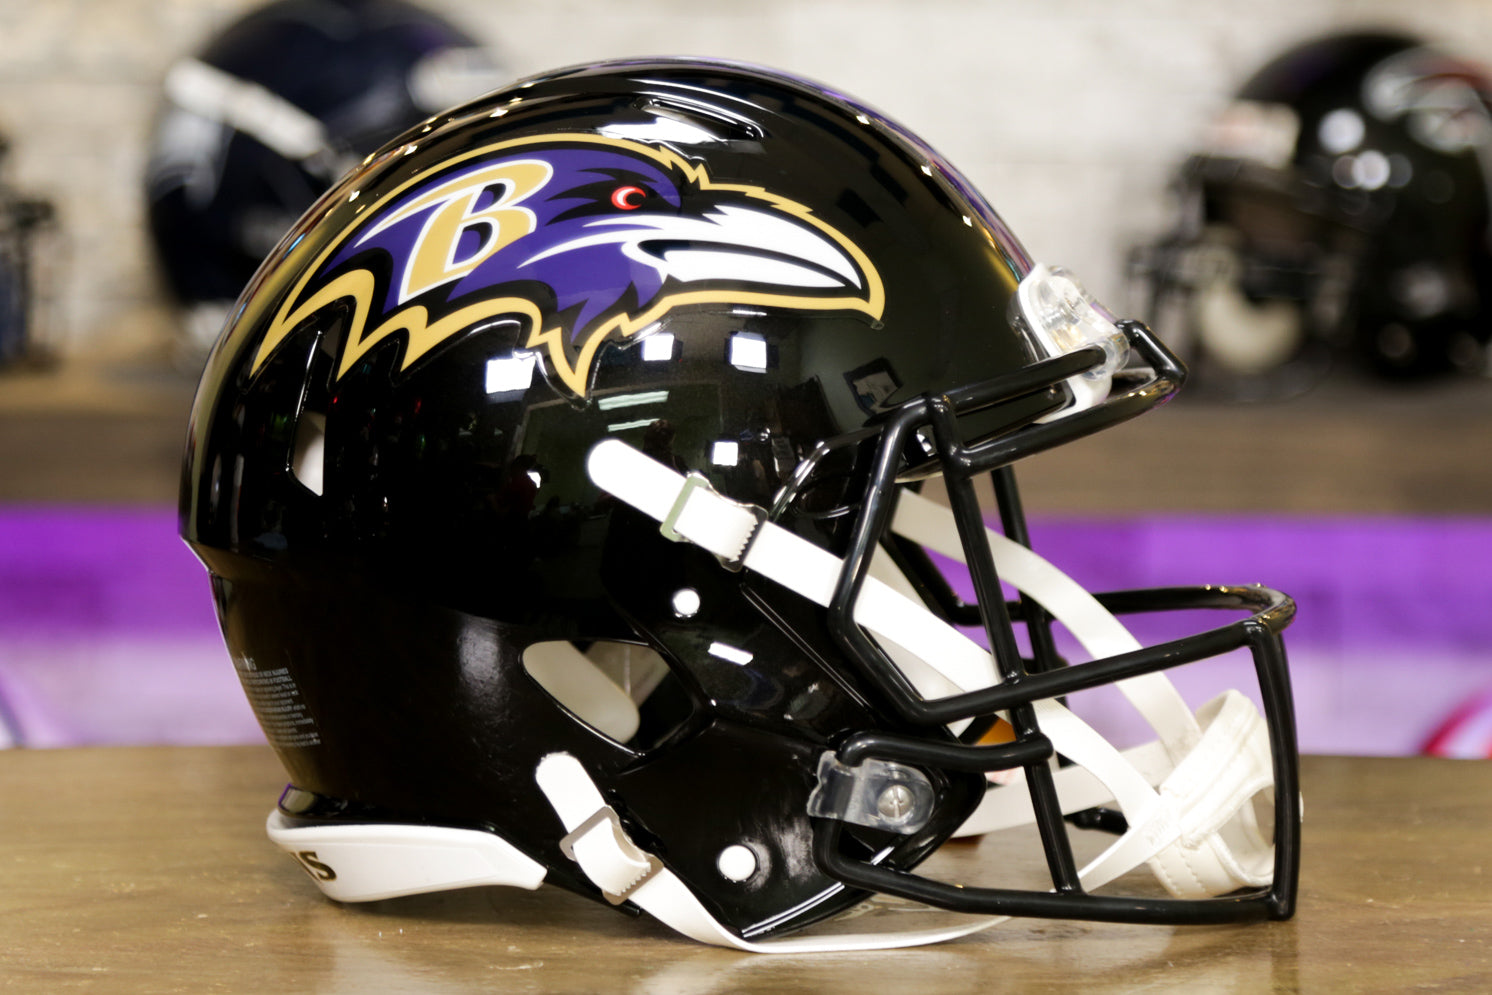 : Riddell BALTIMORE RAVENS NFL SPEED Full Size REPLICA Football  Helmet : Sports & Outdoors